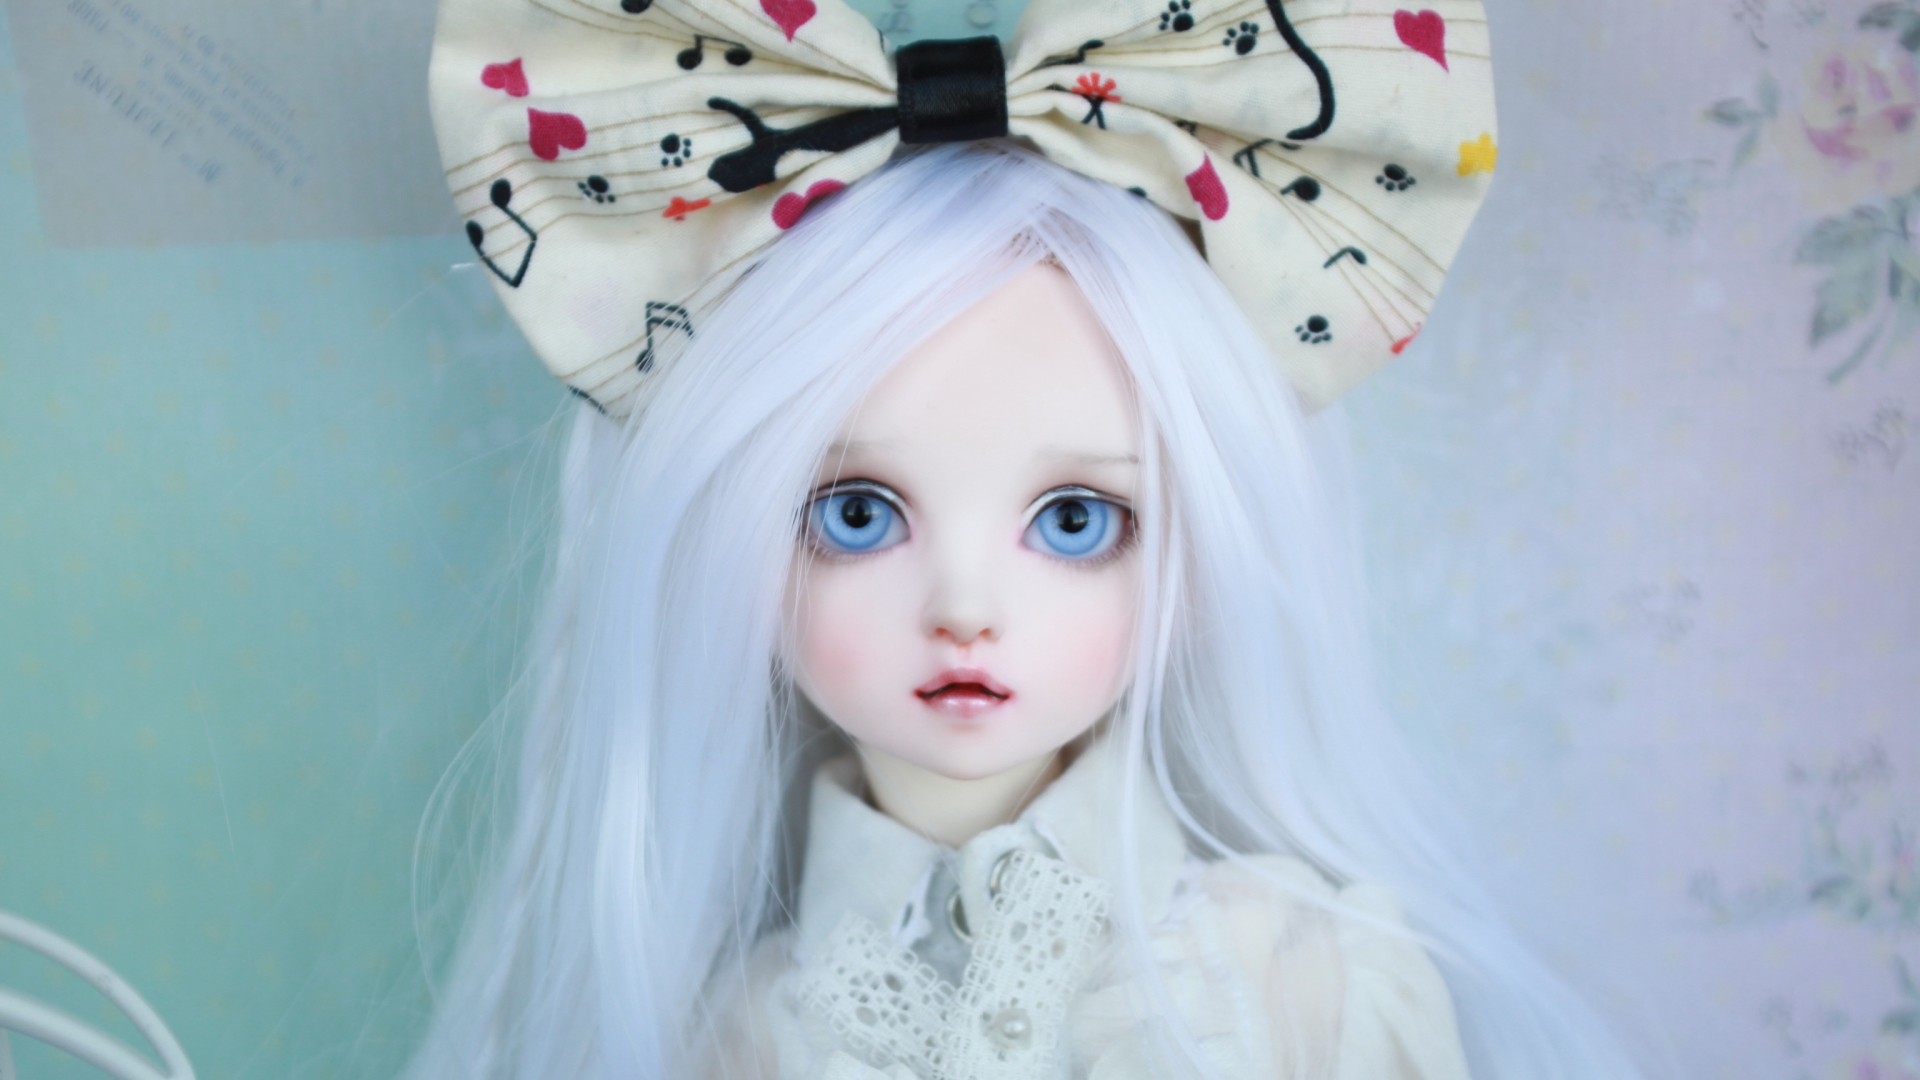 Обои Blonde Doll With Big Bow 1920x1080